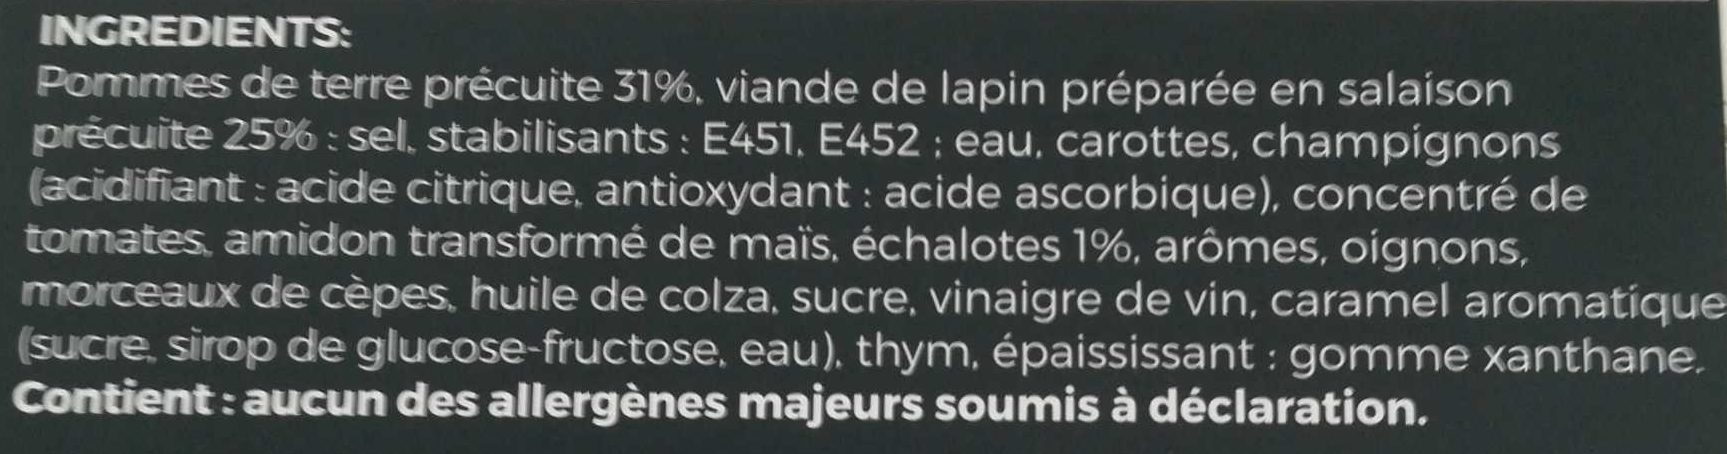 Lapin Chasseur Et Ses Pommes De Terre Exalt - Ingrédients